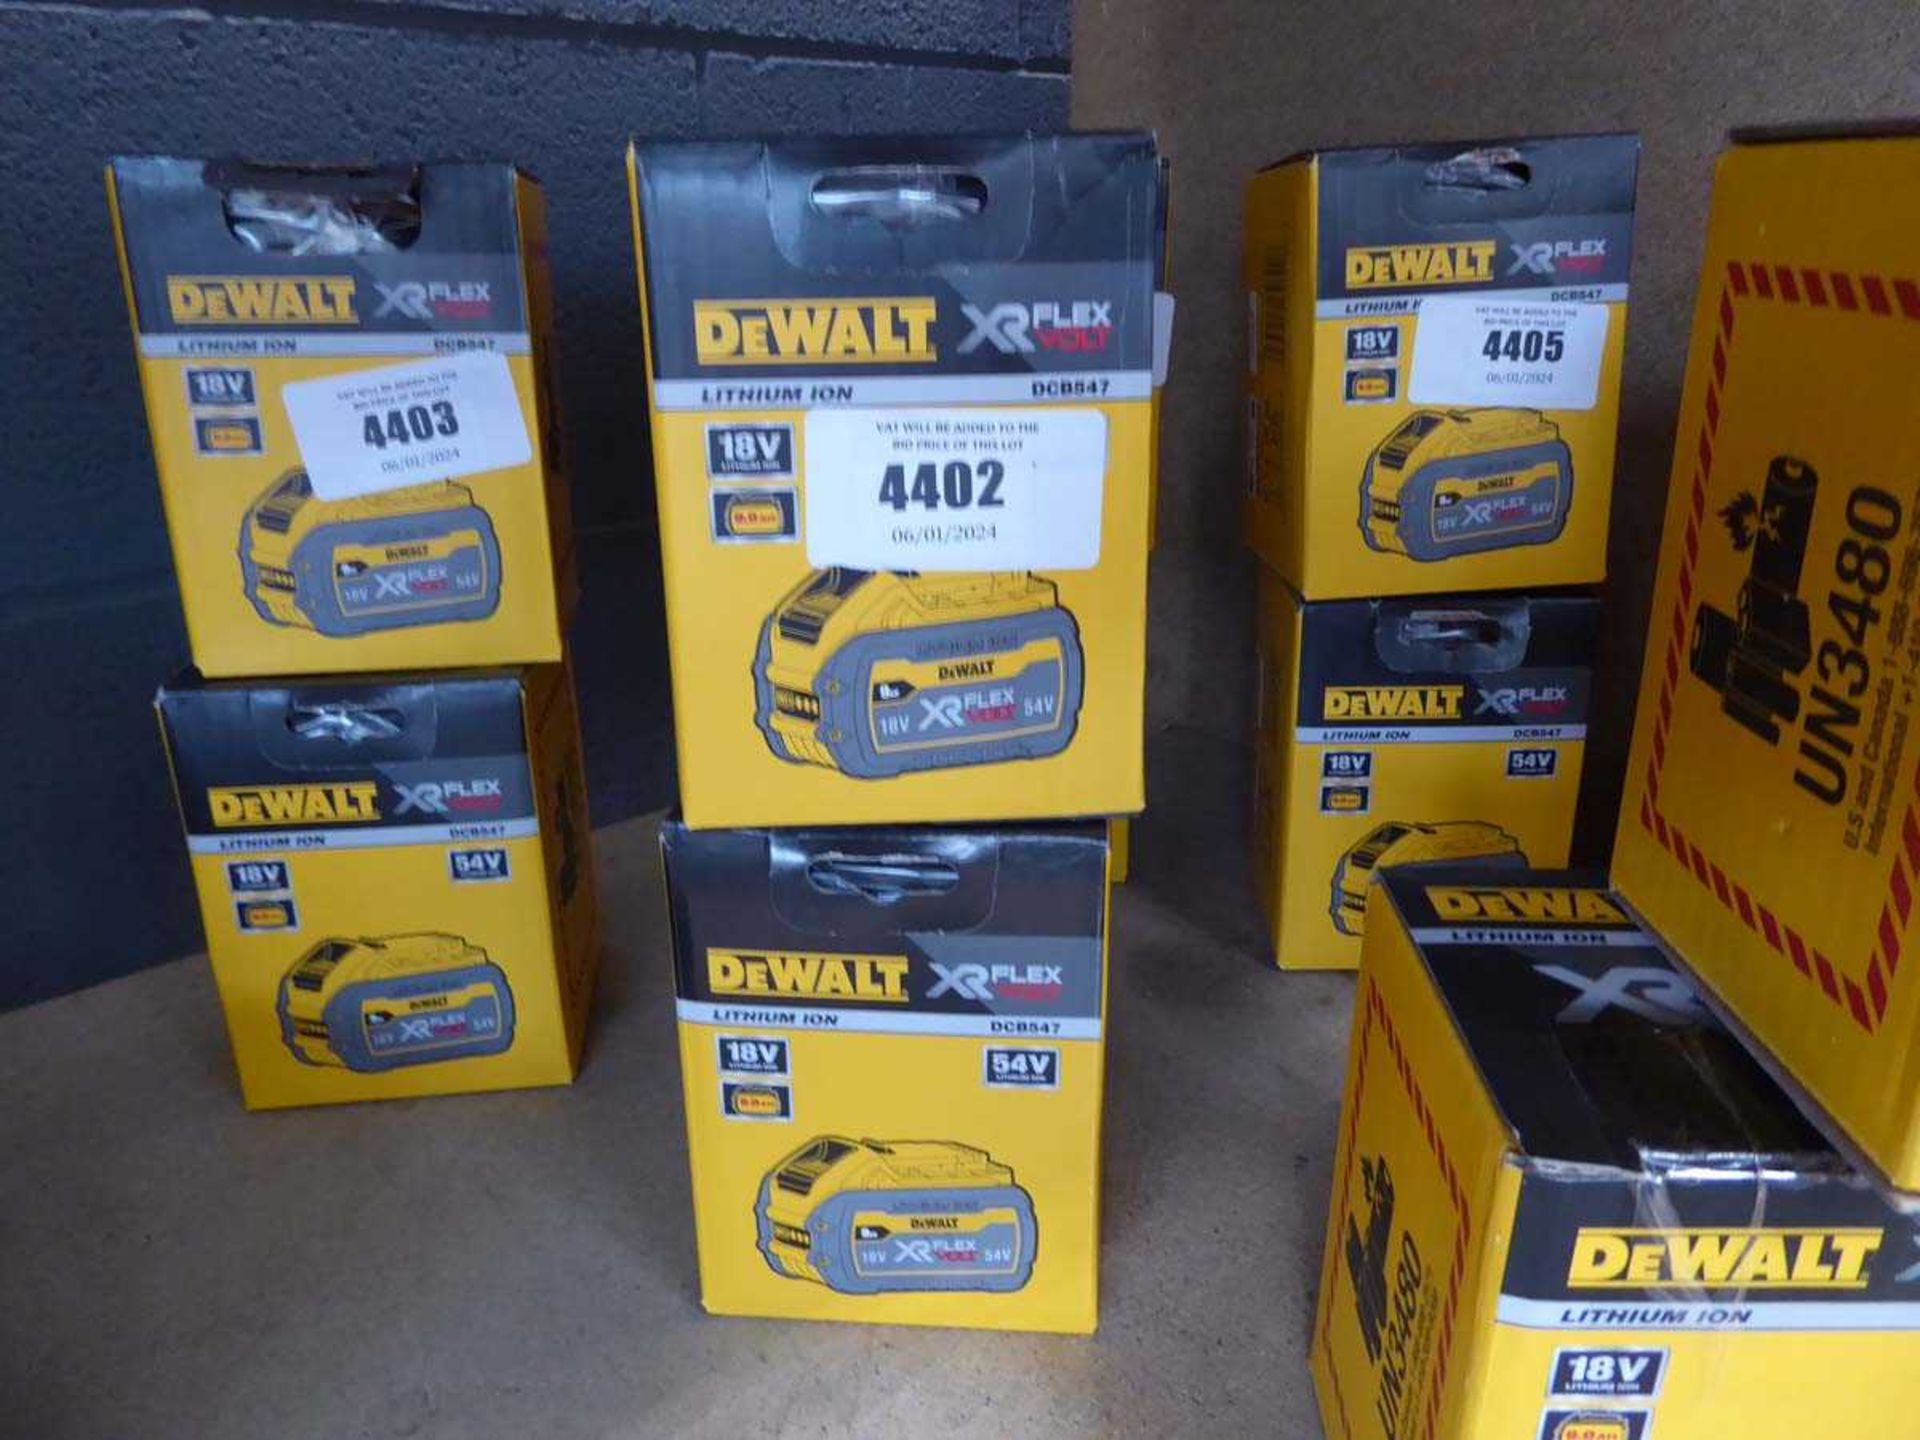 +VAT 2 Dewalt Xr Flex 18V batteries